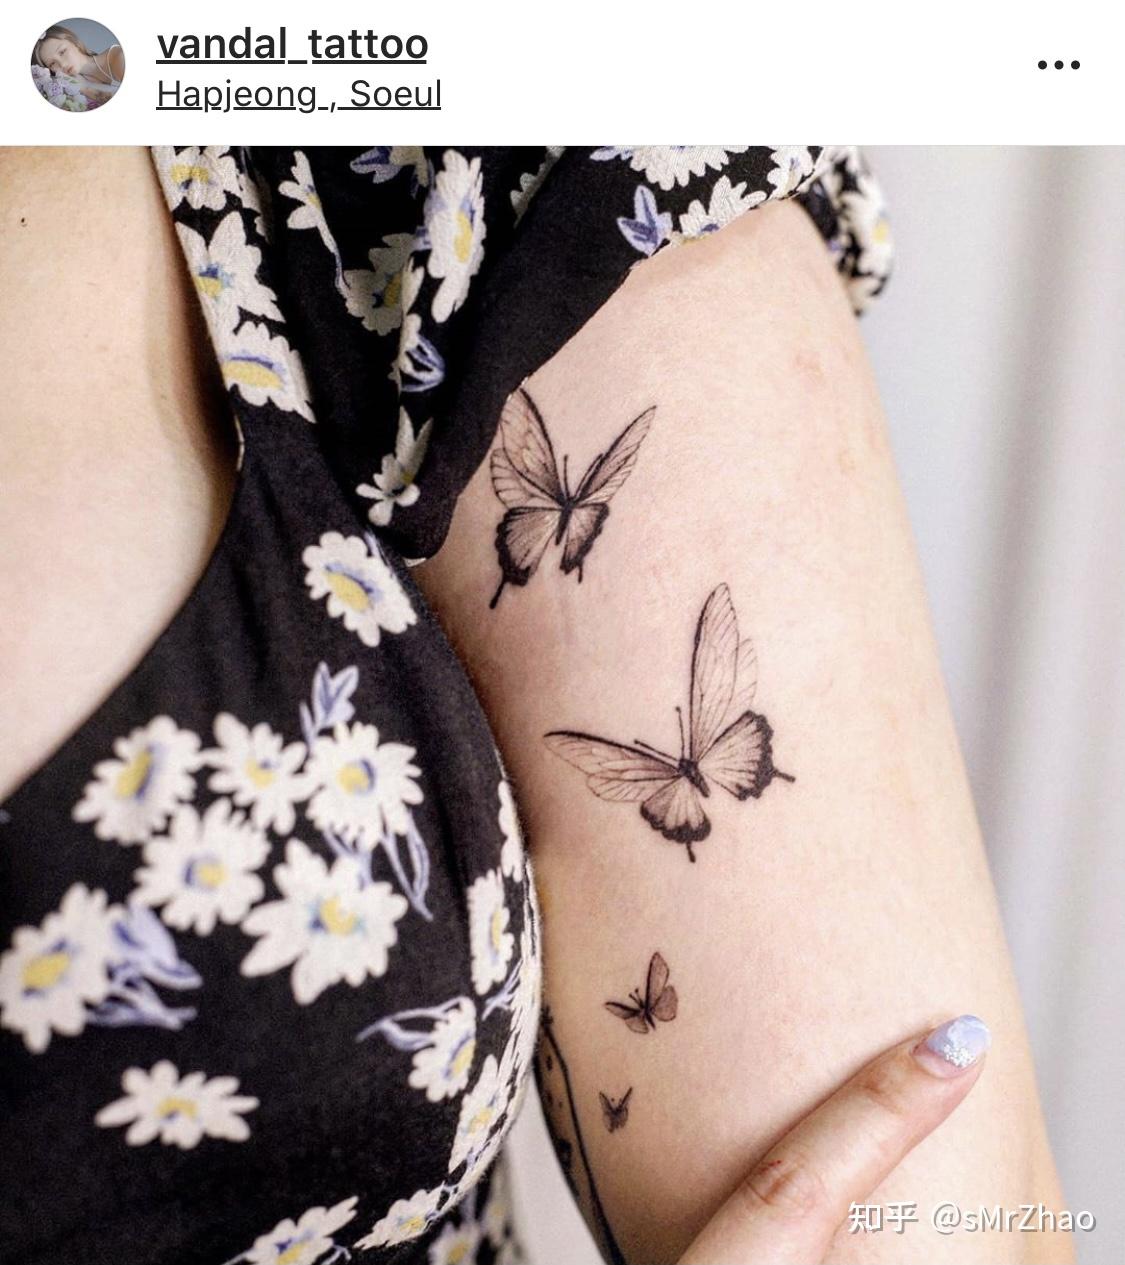 彩色蝴蝶花纹身手稿图案